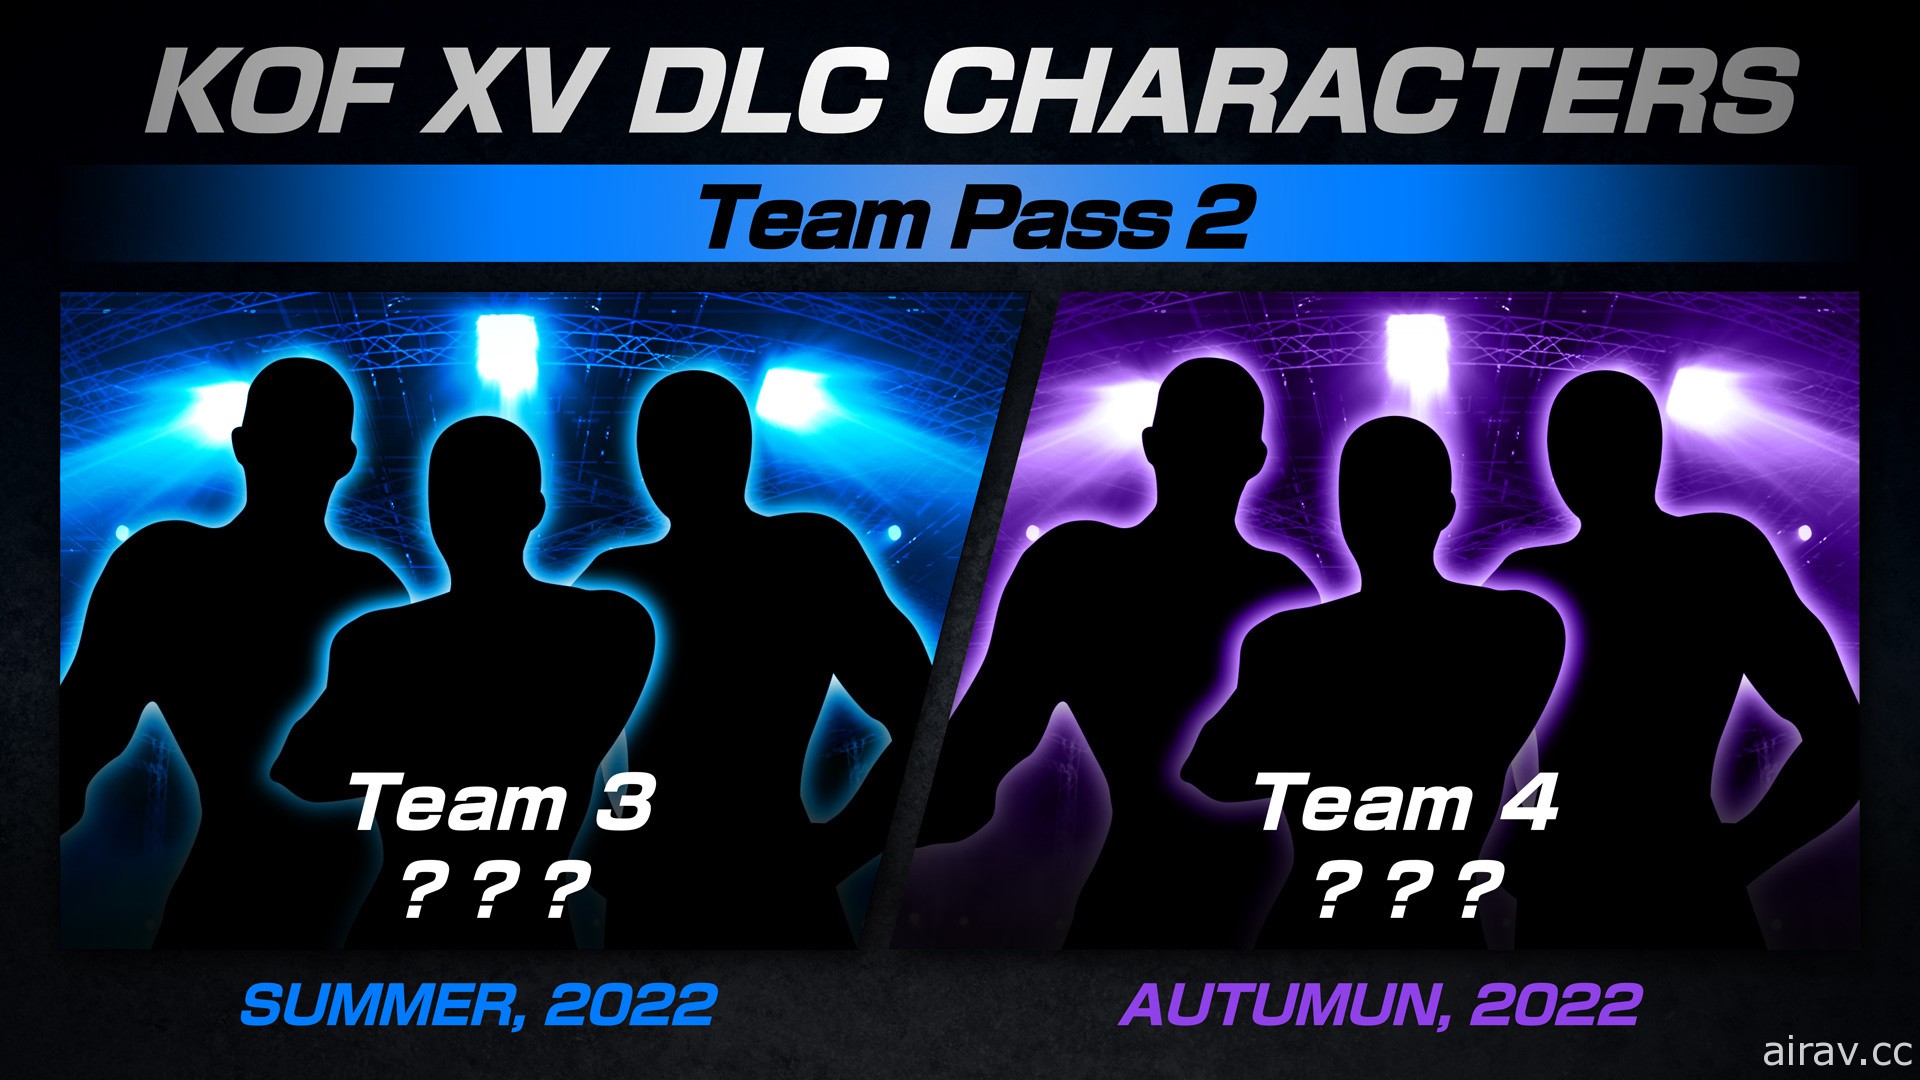 《拳皇 XV》DLC 參戰陣容將由「餓狼狼之印記隊」及「南鎮隊」打頭陣